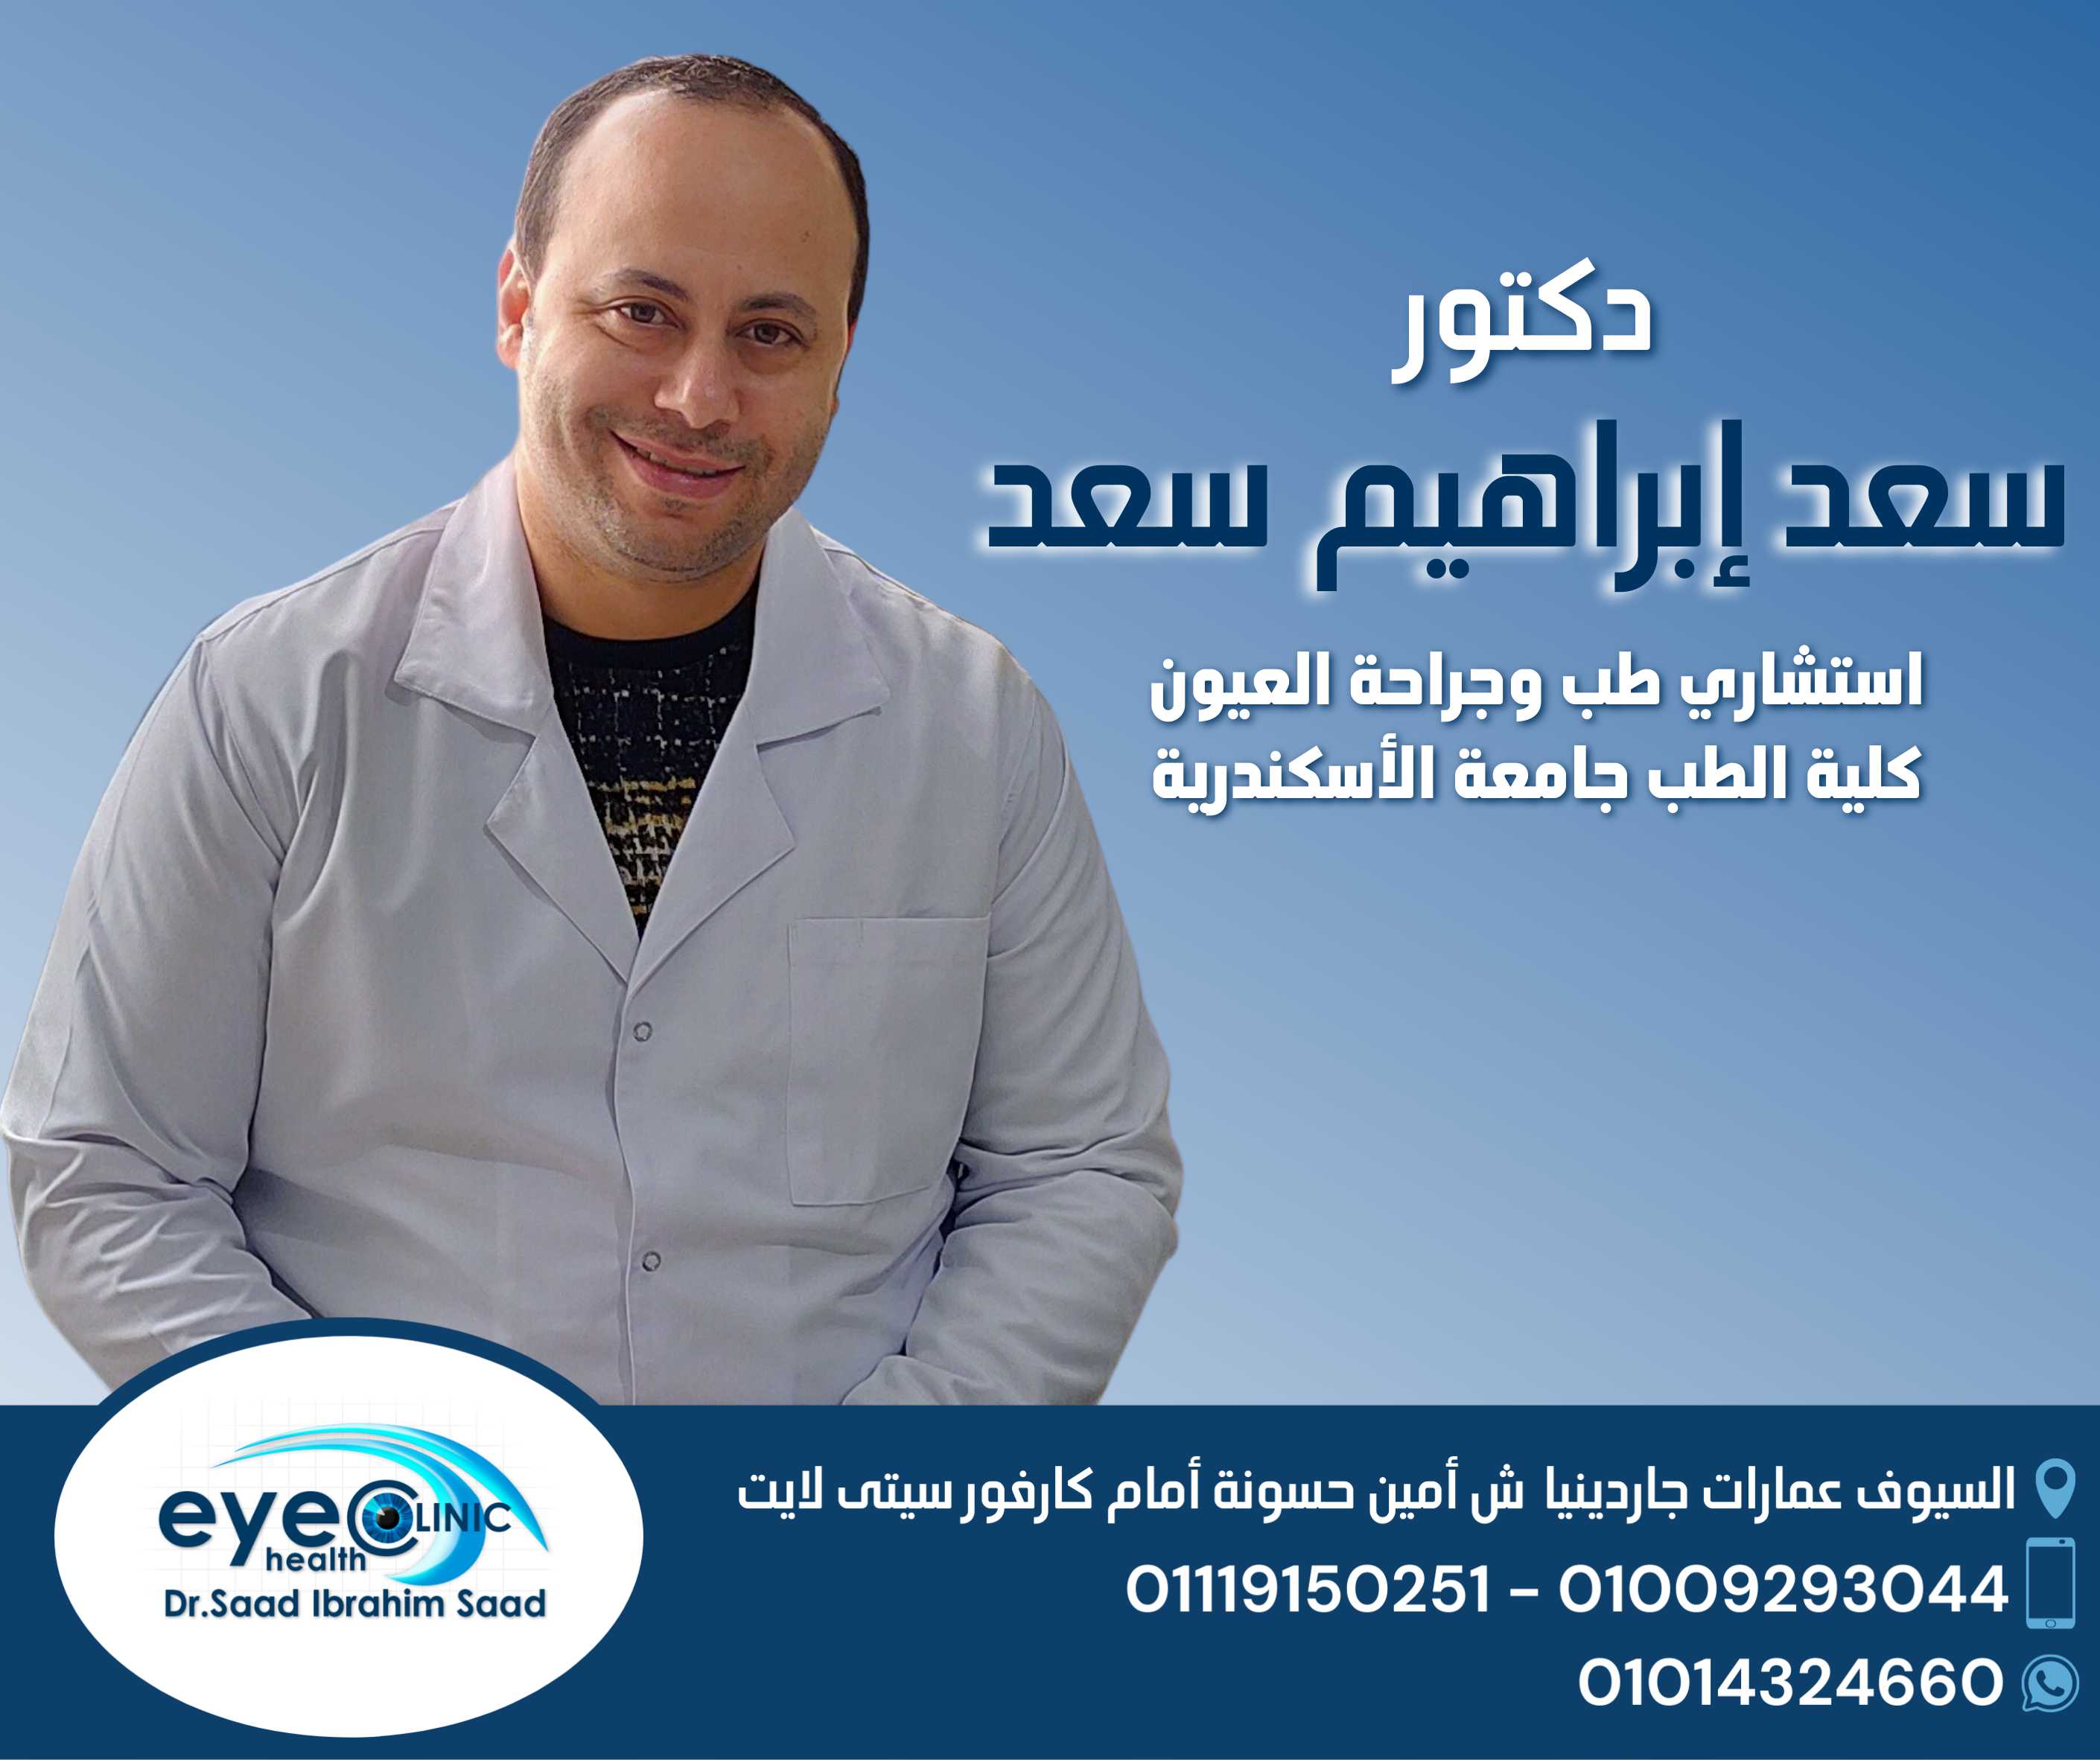 Dr. Saad Ibrahim saad